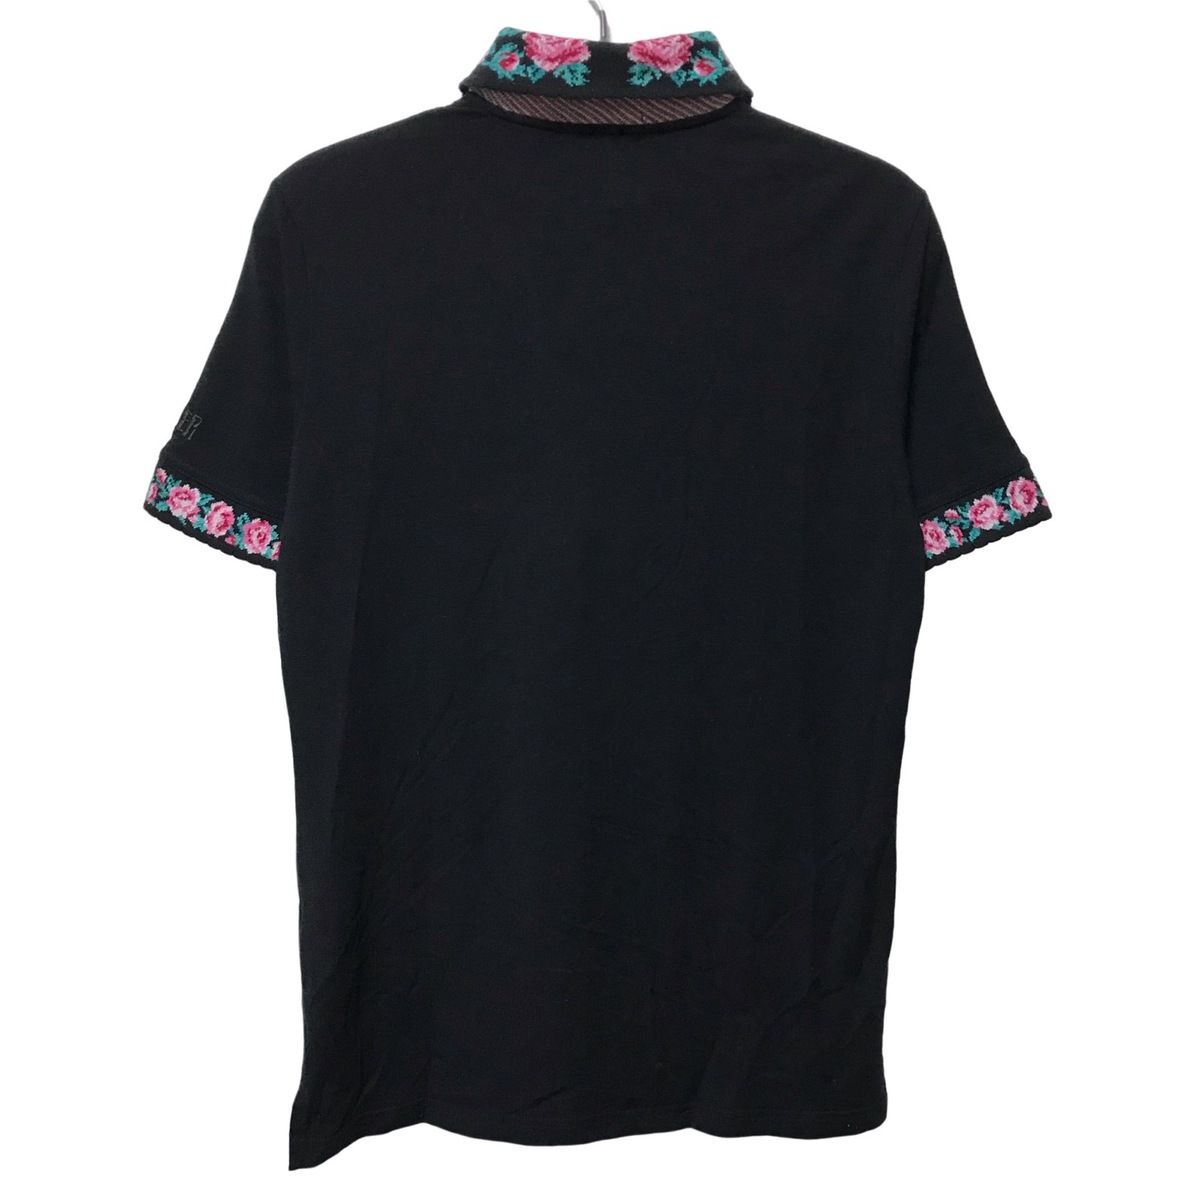 FEILER(フェイラー) 半袖ポロシャツ サイズ レディース - 黒×ピンク 